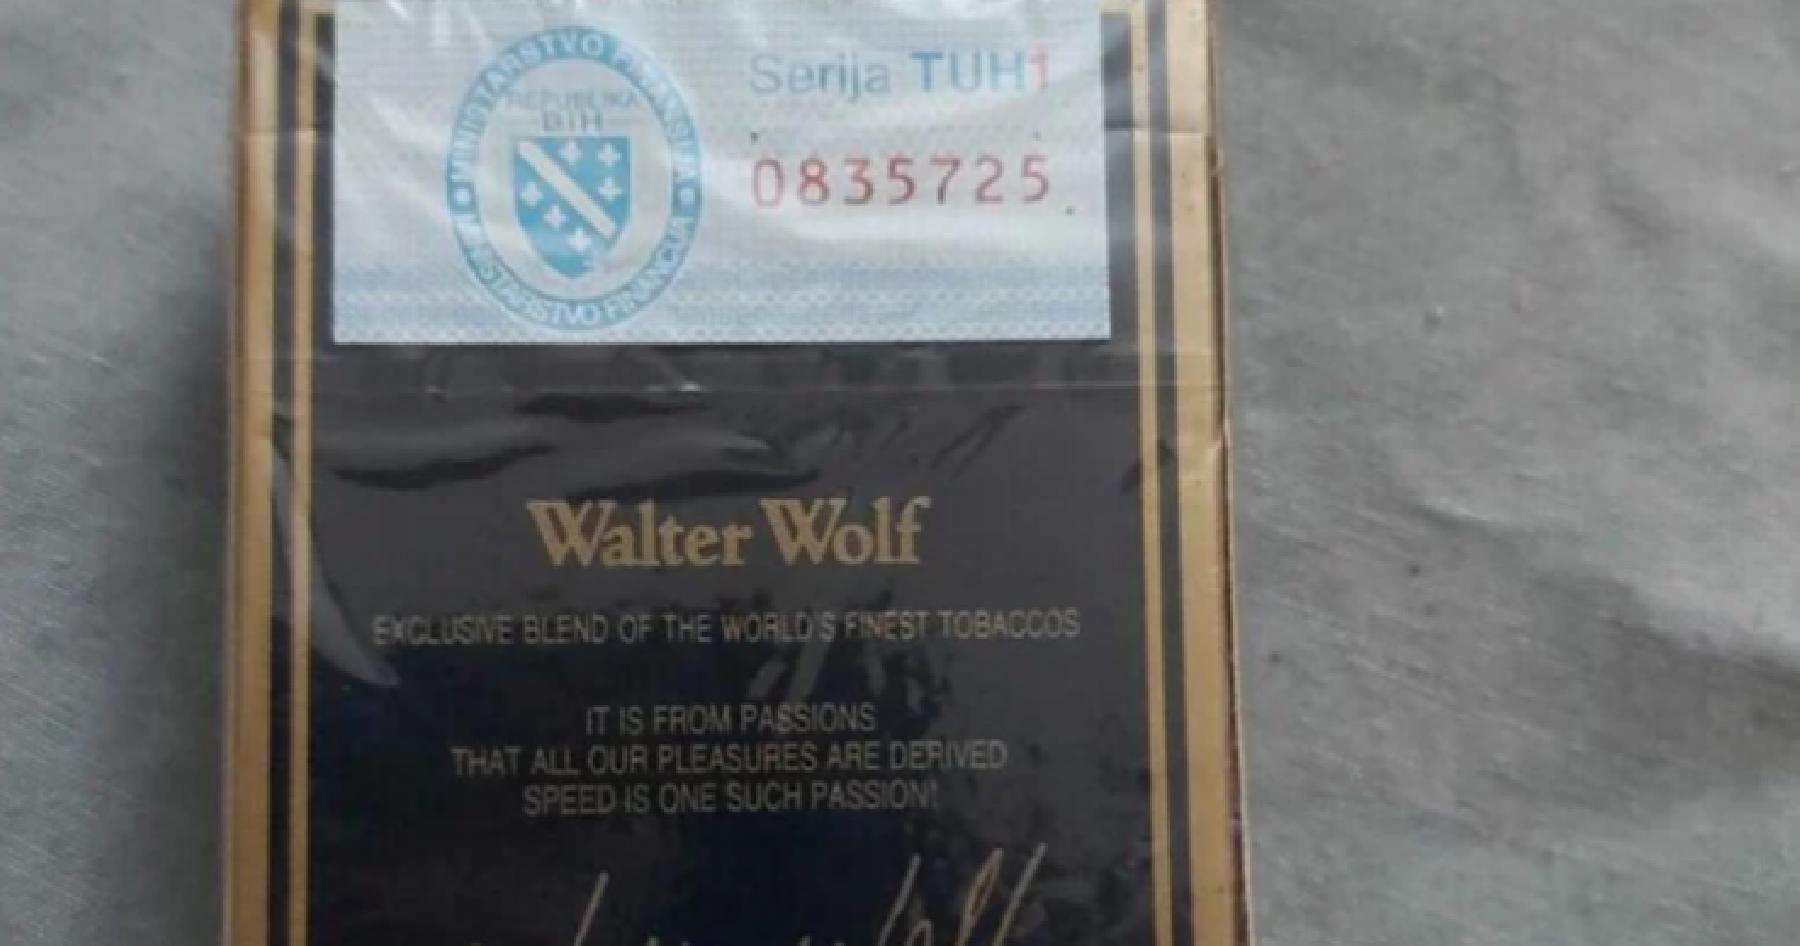 Tuzlak prodaje neotvorenu kutiju Walter Wolfa iz 1994. godine, na njoj markica sa zastavom RBiH